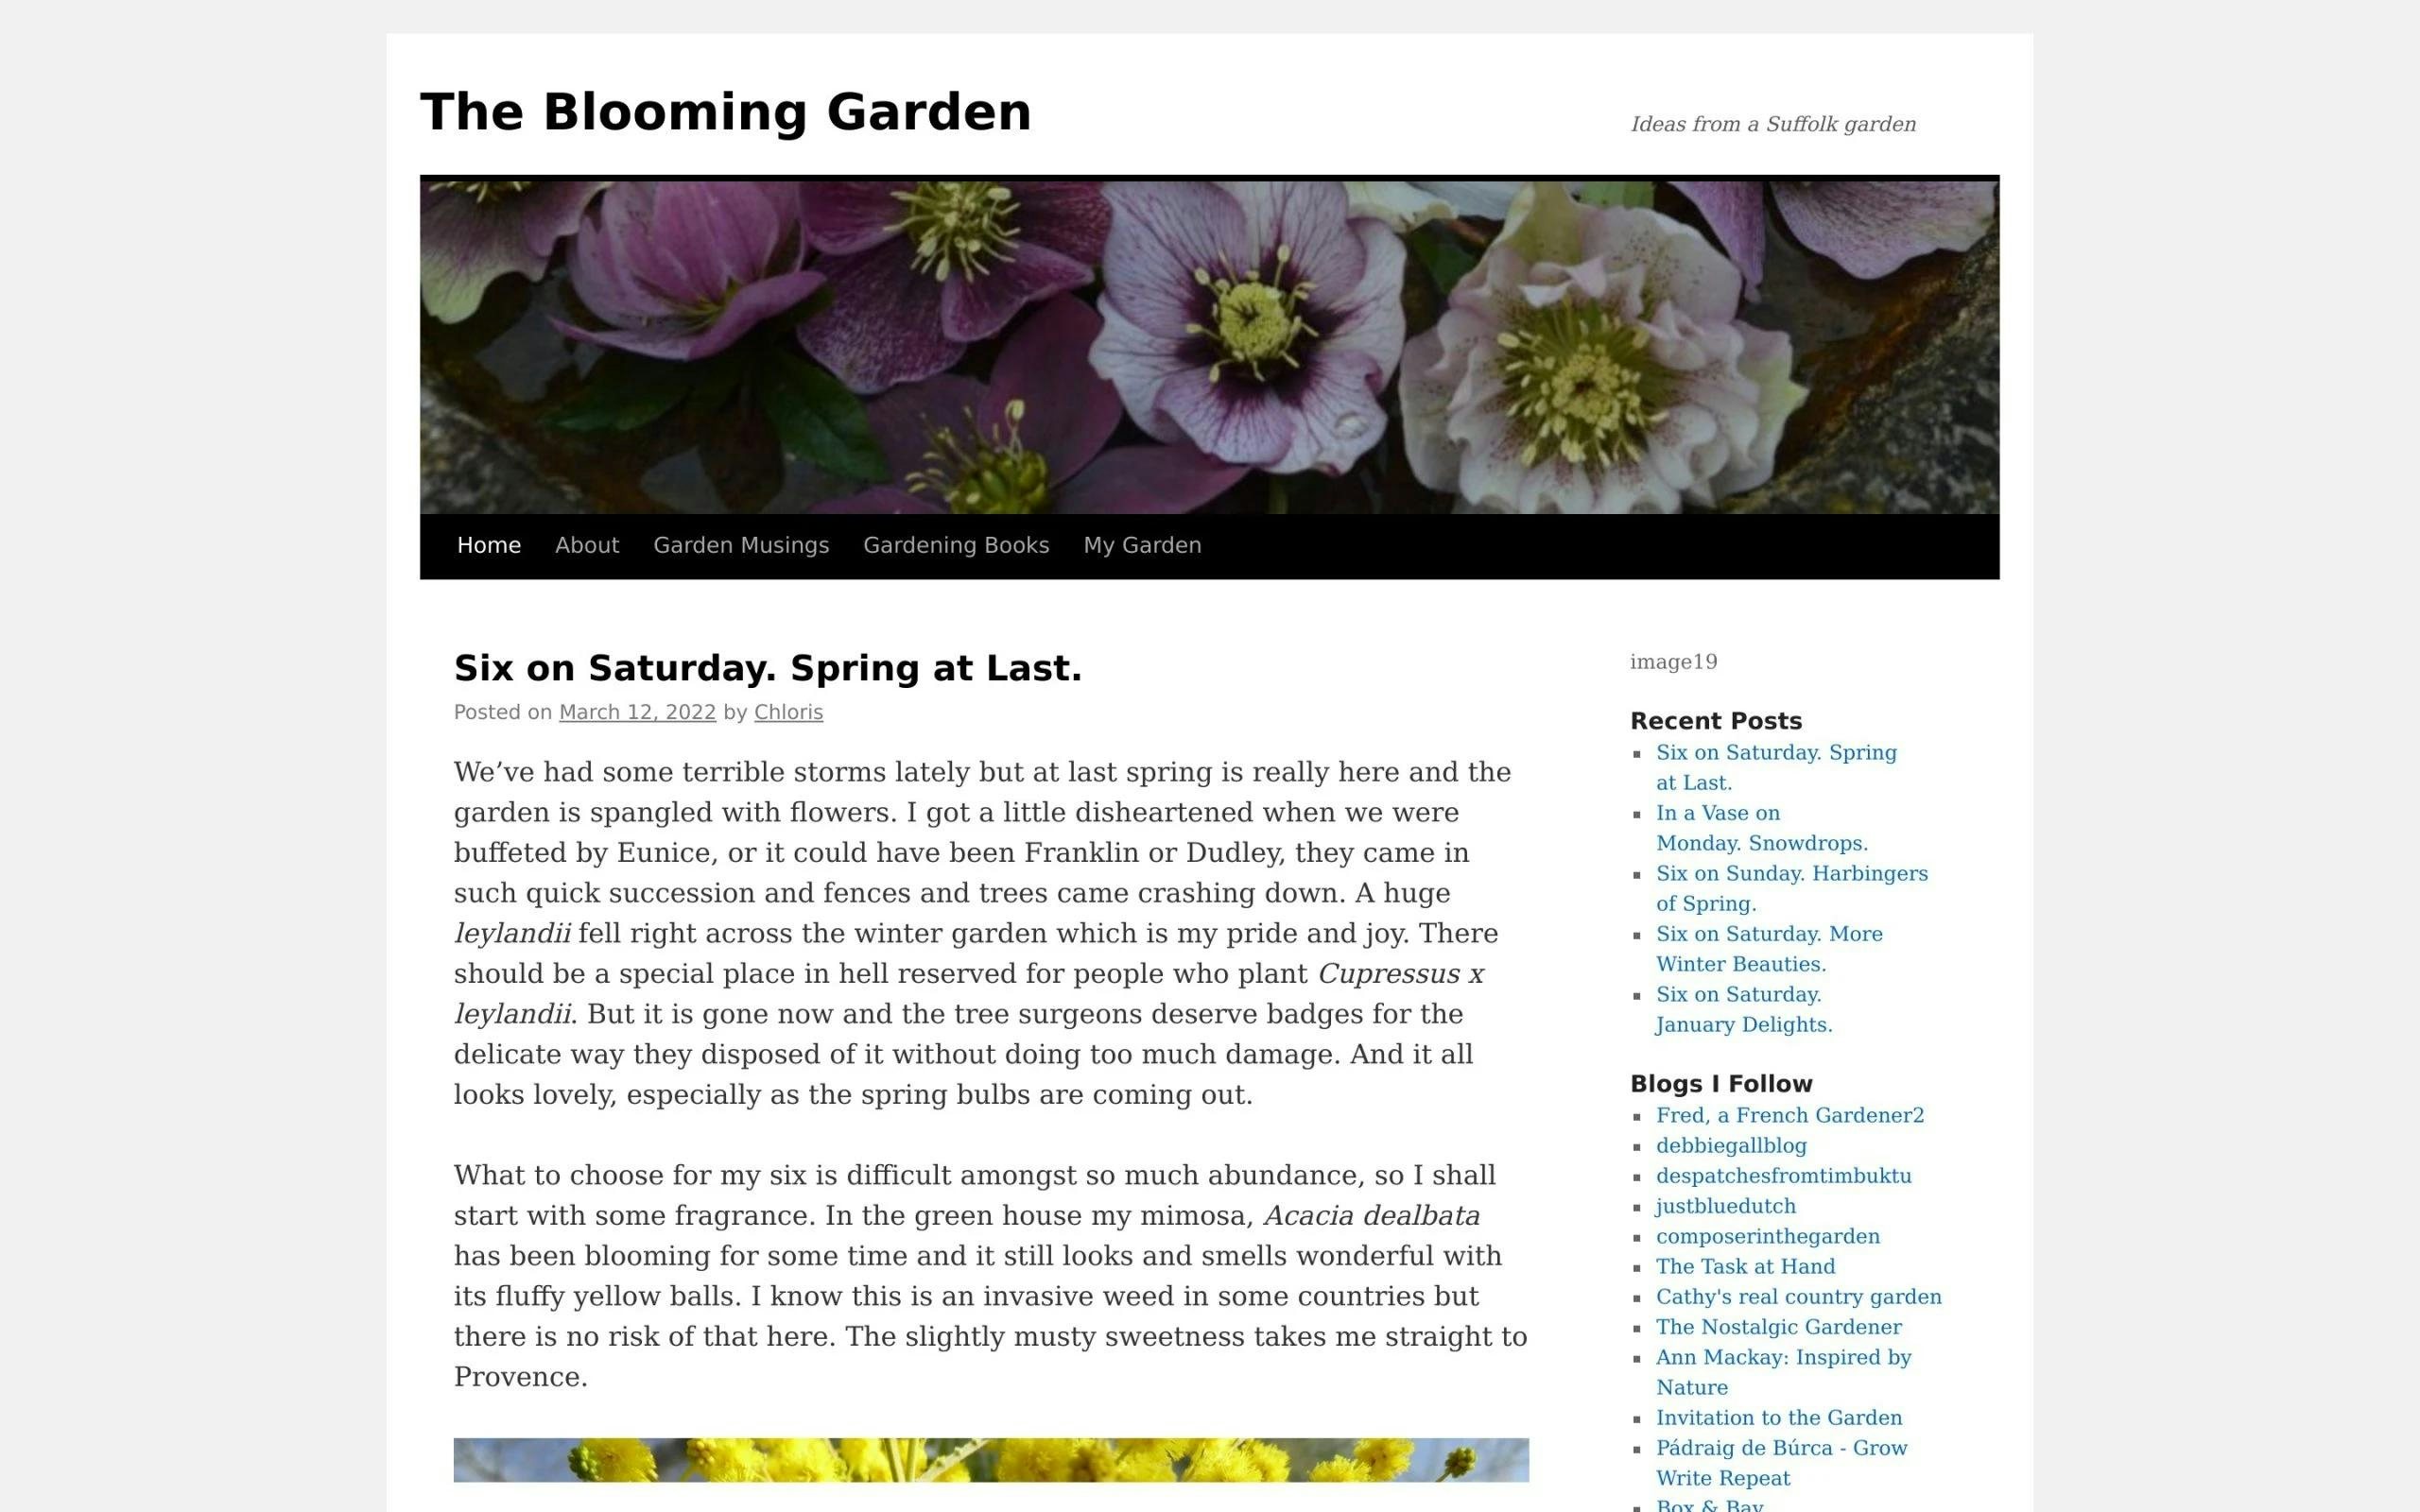 The Blooming Garden